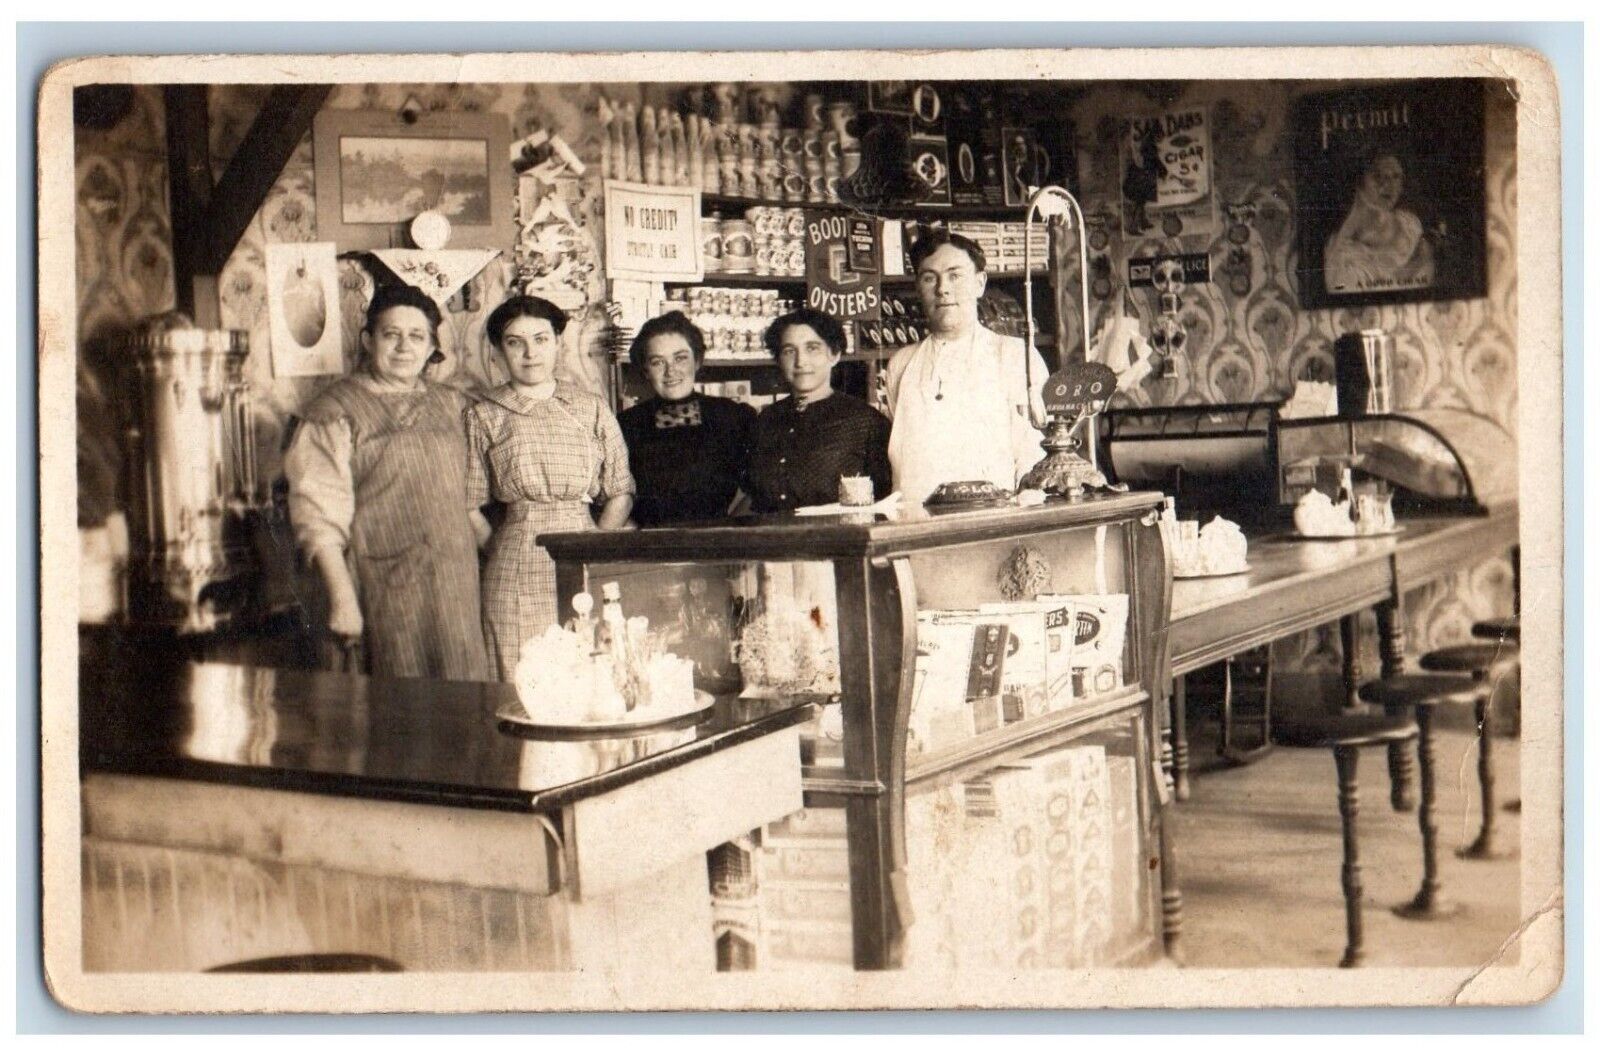 Restaurant General Store Postcard RPPC Photo Interior View c1910's Antique